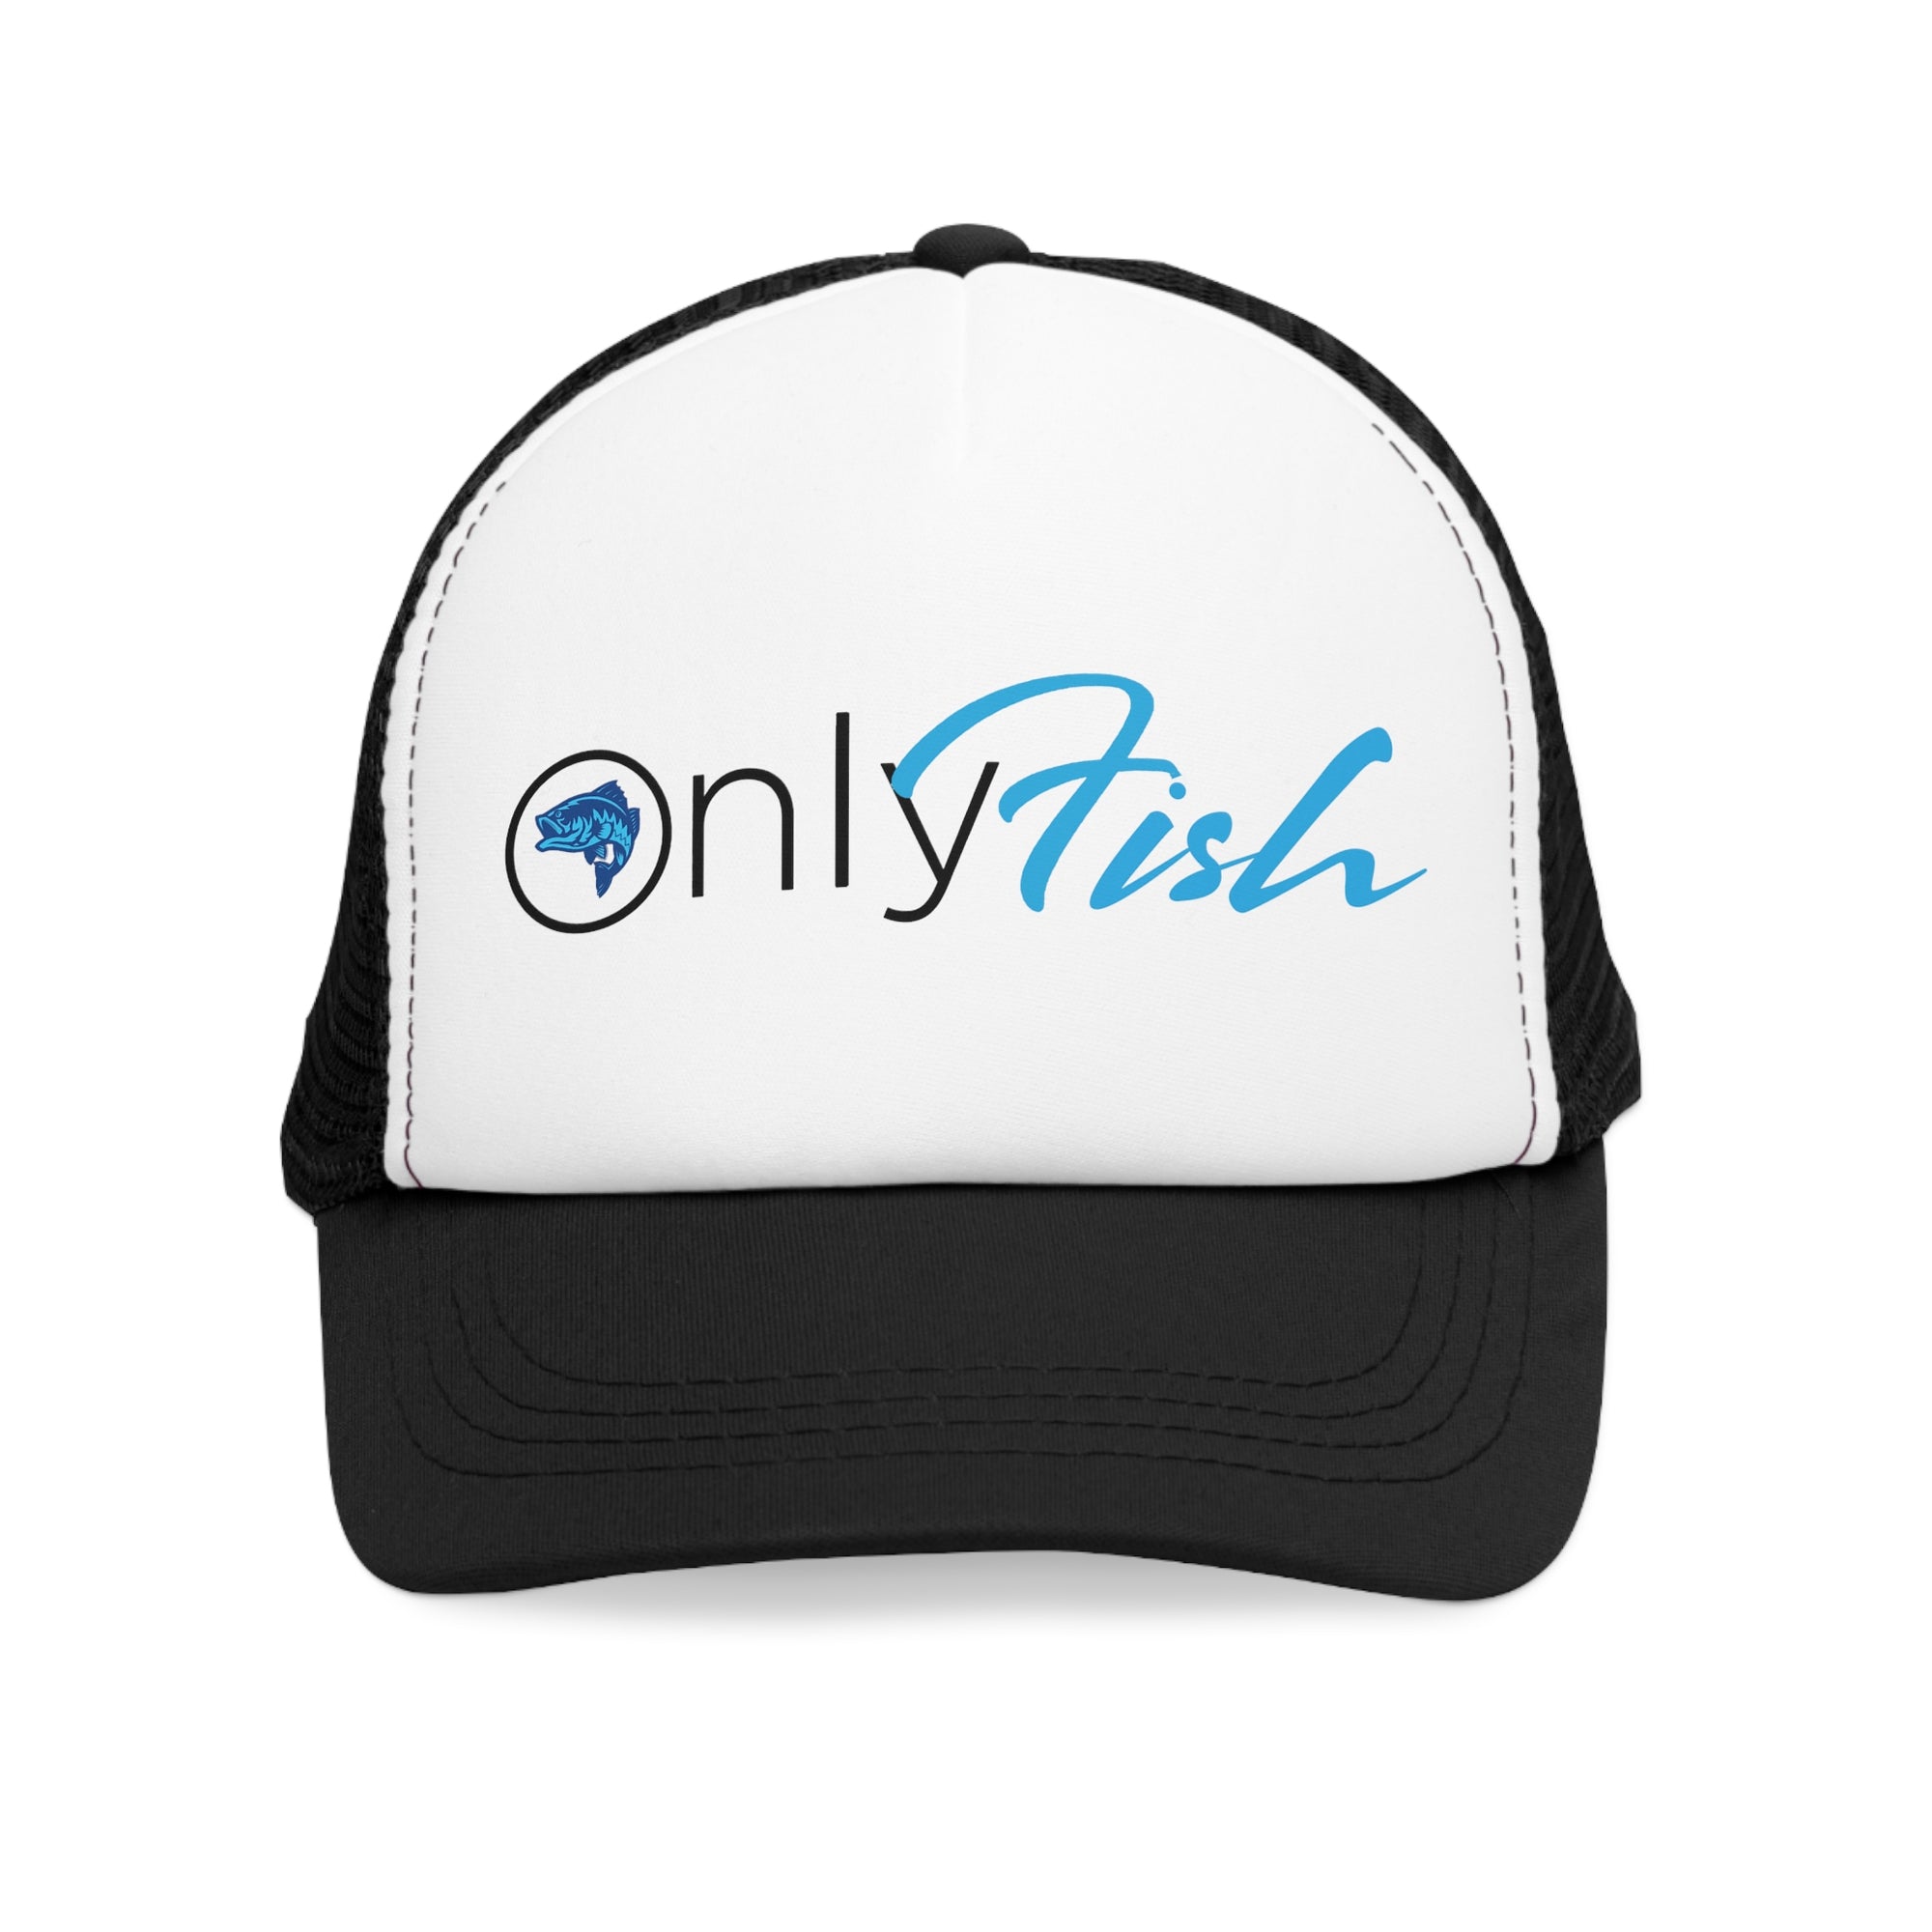 Onlyfish Mesh Cap, fishing cap